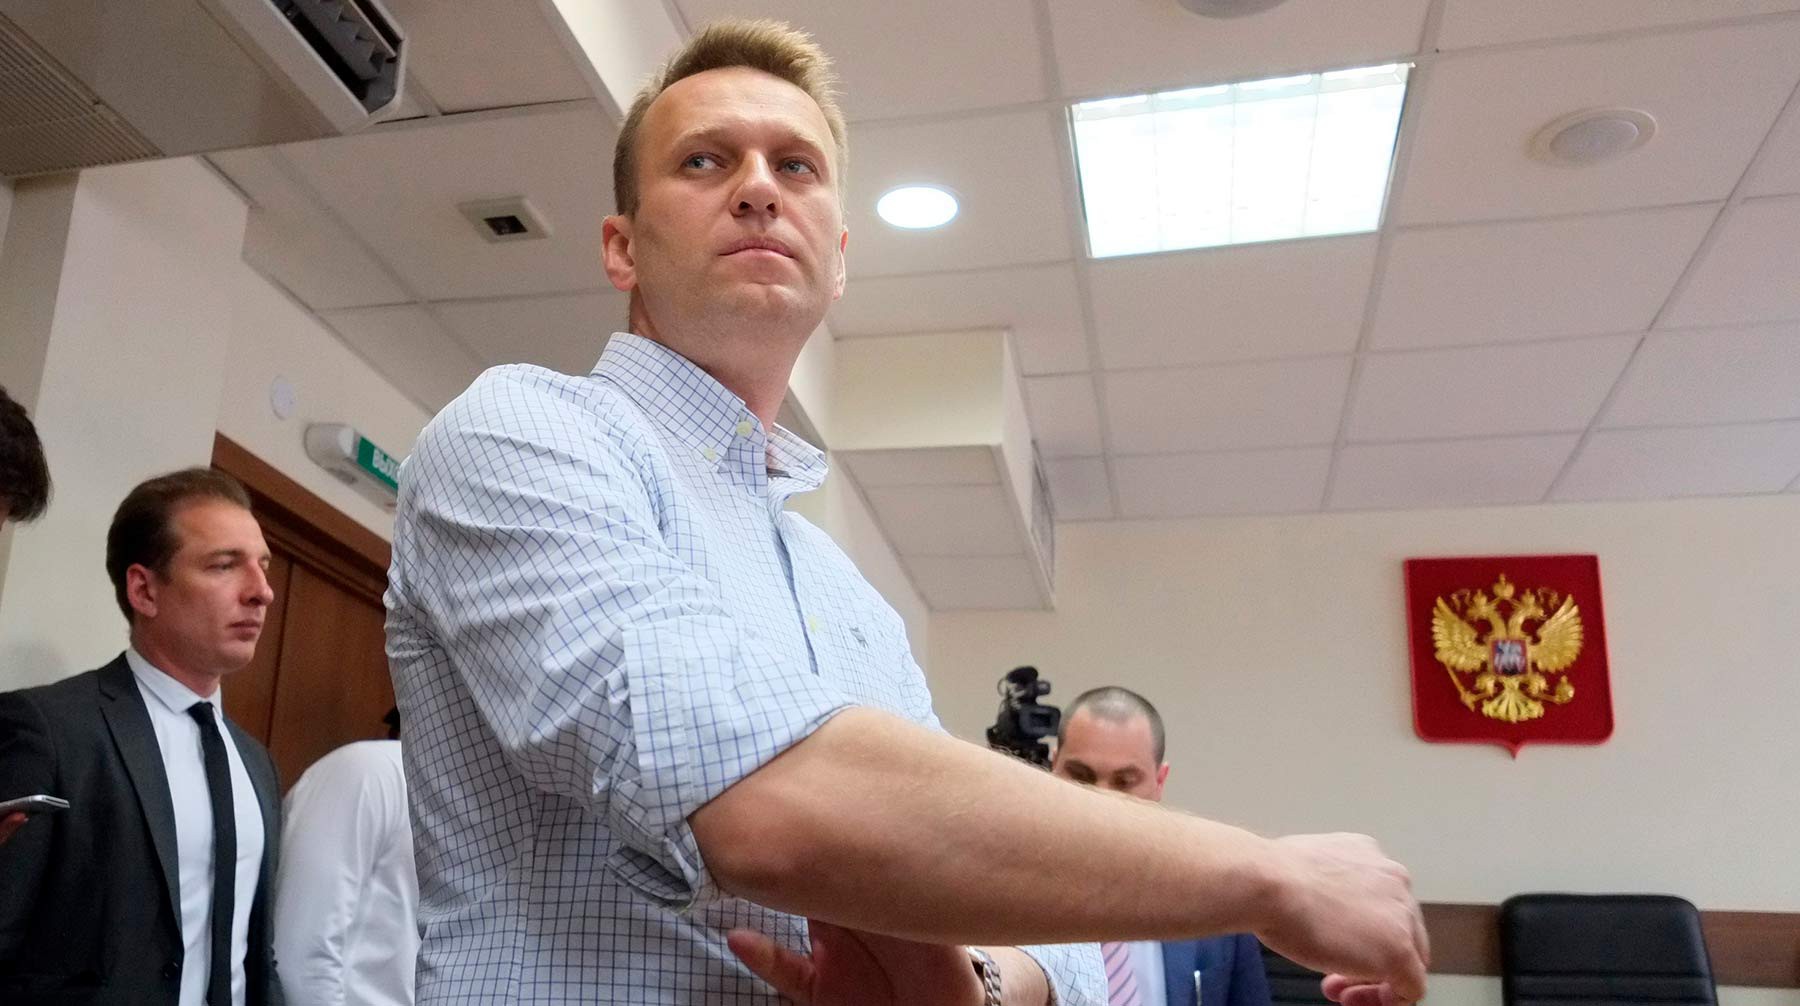 Dailystorm - Терапевт Навального рассказал о планах перевезти политика в клинику в Европе